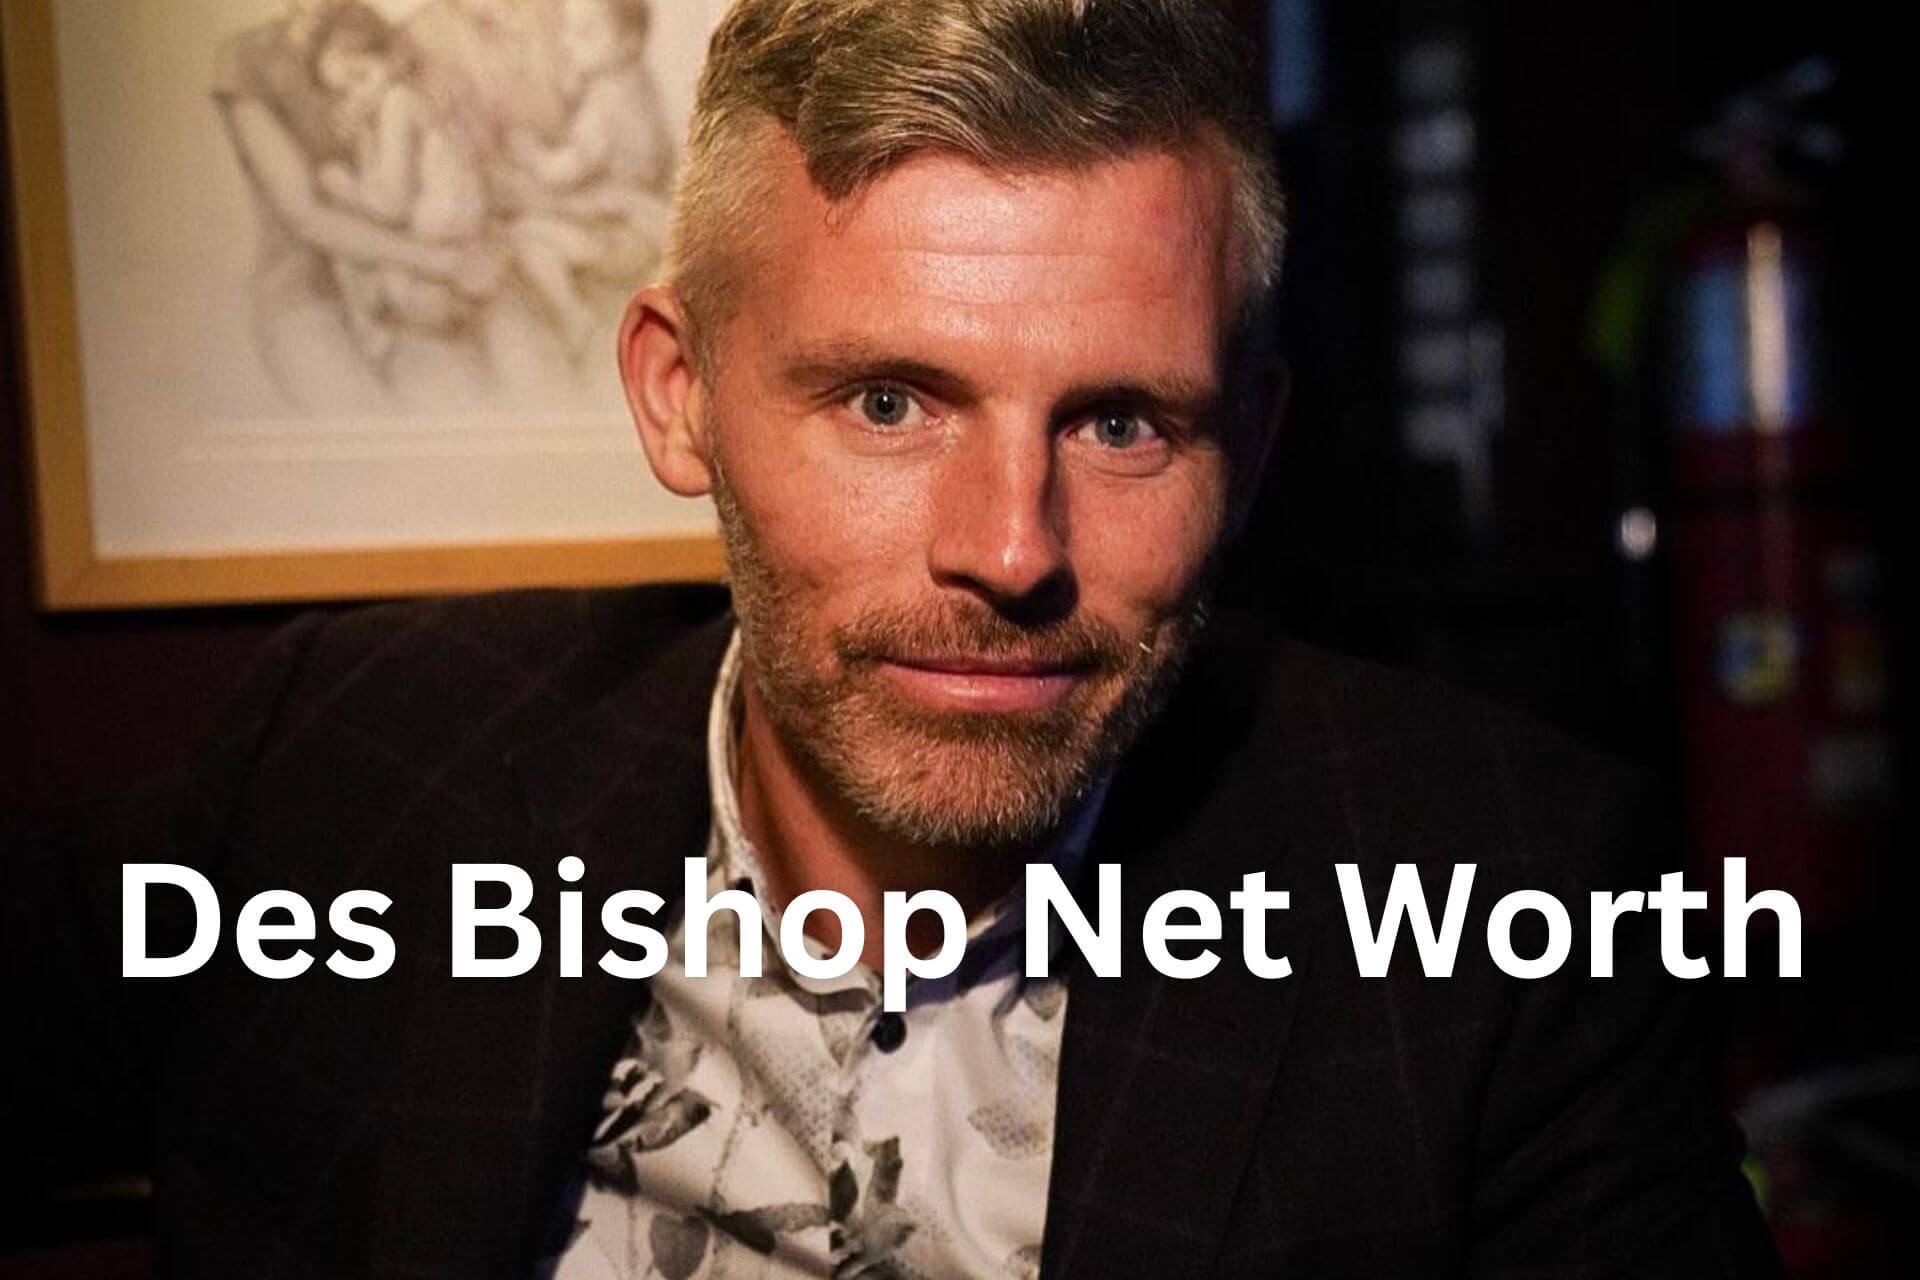 Des Bishop Net Worth